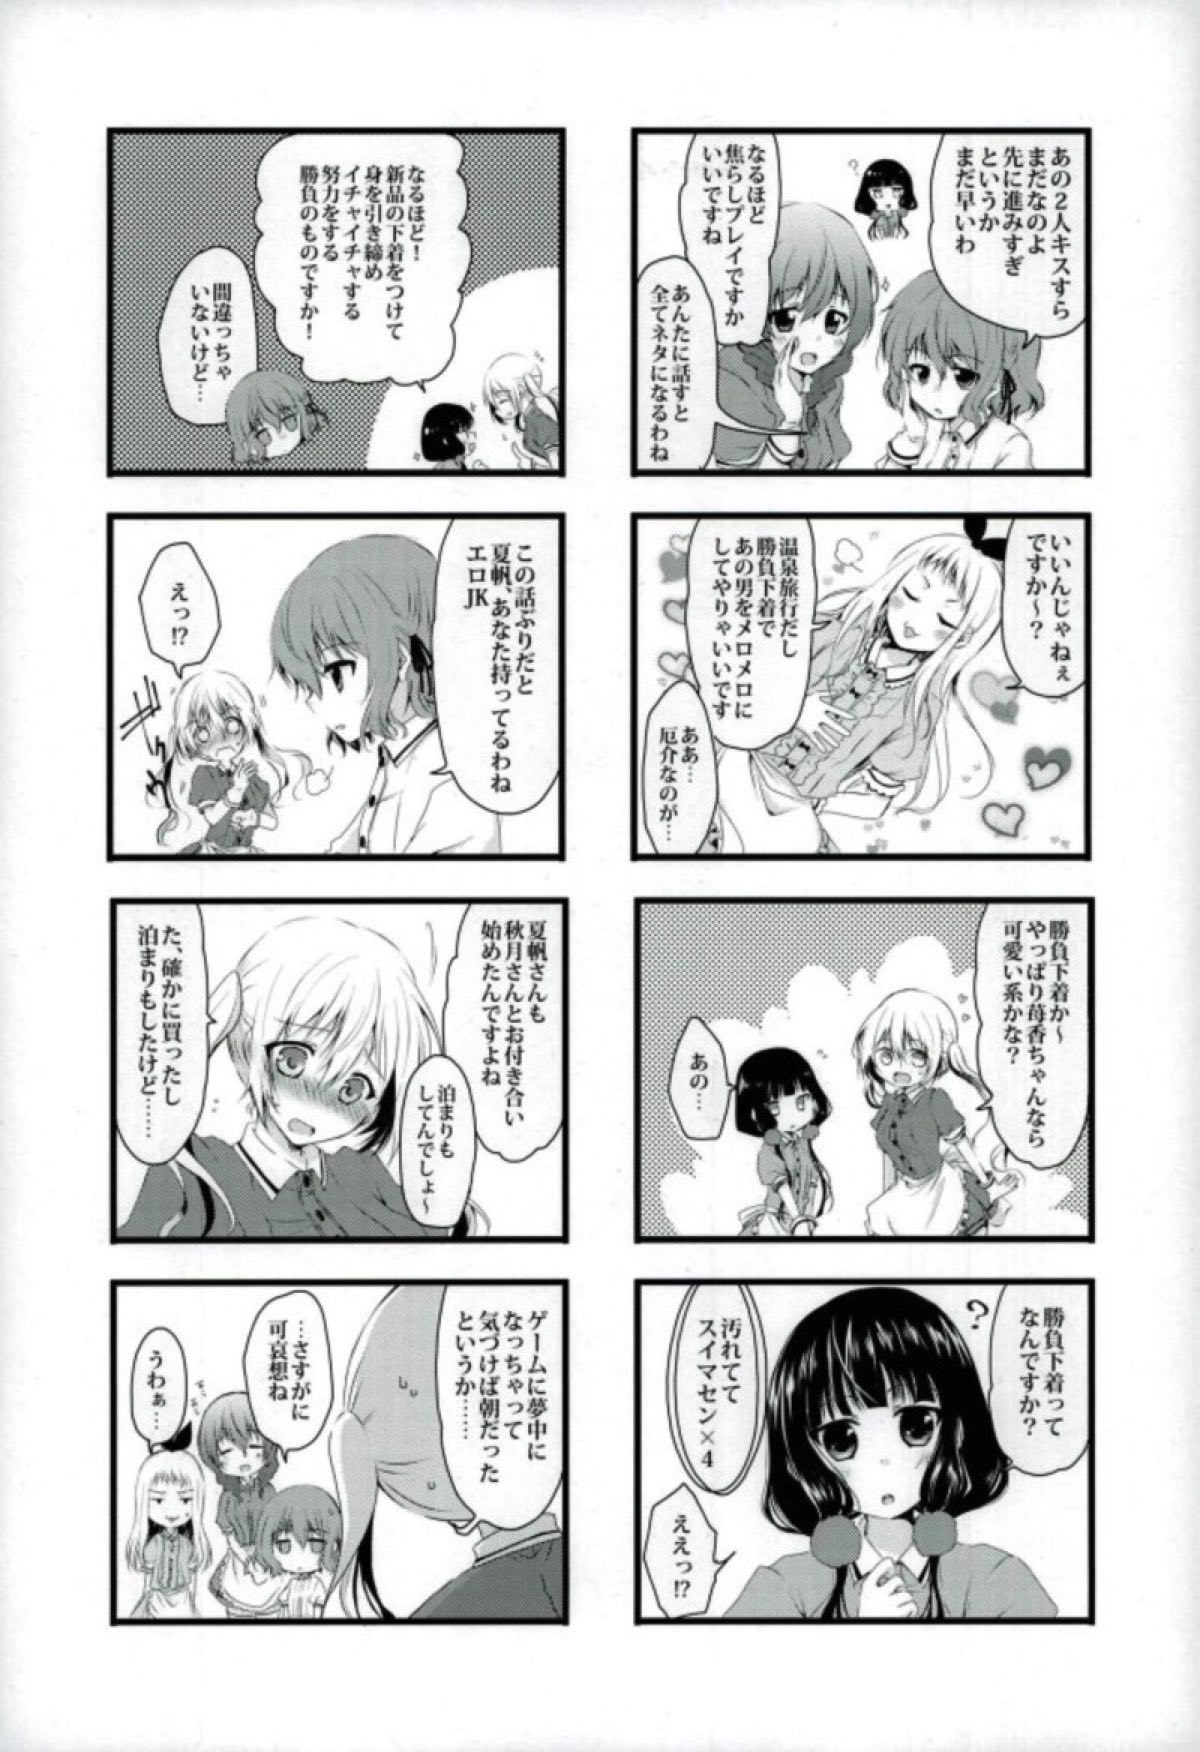 【ブレンド・S】恋する女の子たちの胸キュン不可避な４コマ漫画☆の画像5枚目